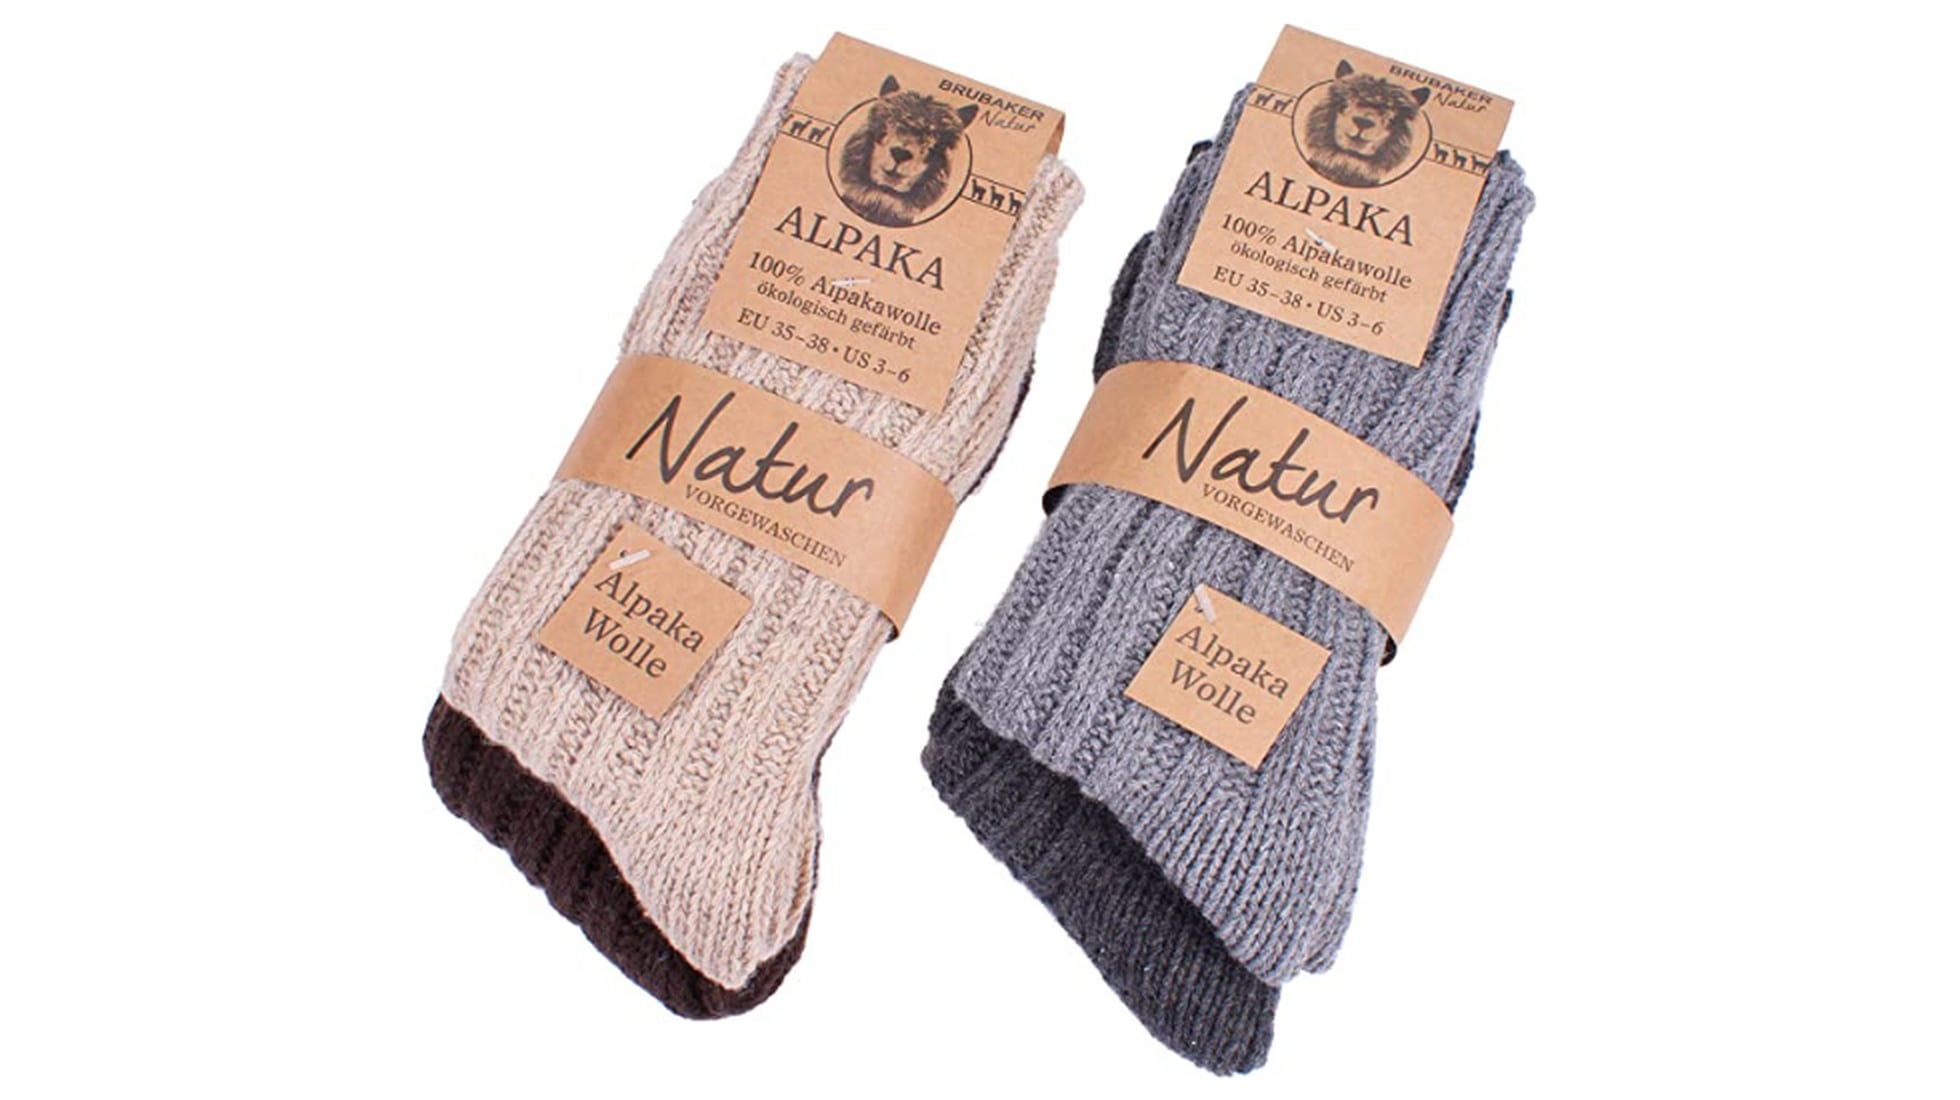 5 pares de calcetines de lana gruesos tejidos cálidos de invierno para mujer  calcetines acogedores cómodos